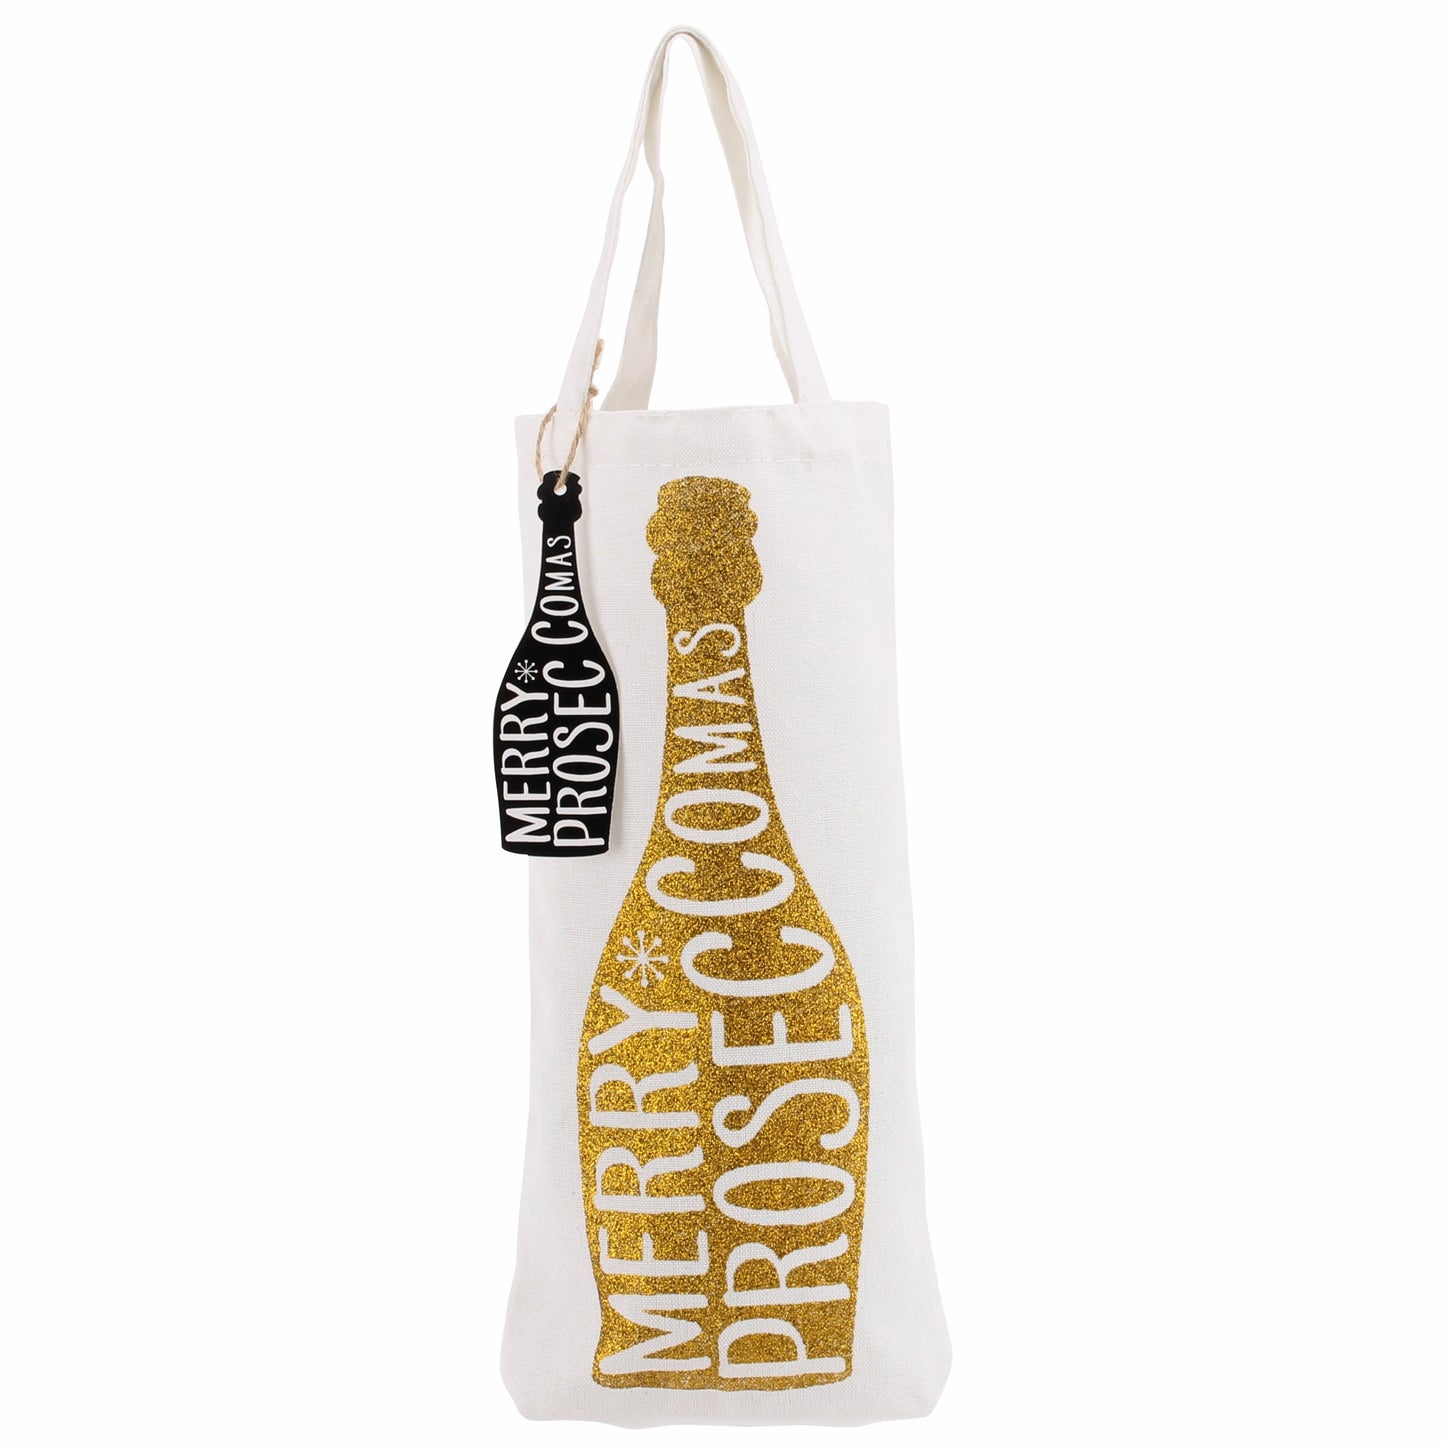 Gold Merry Prosecco-mas Bottle Bag